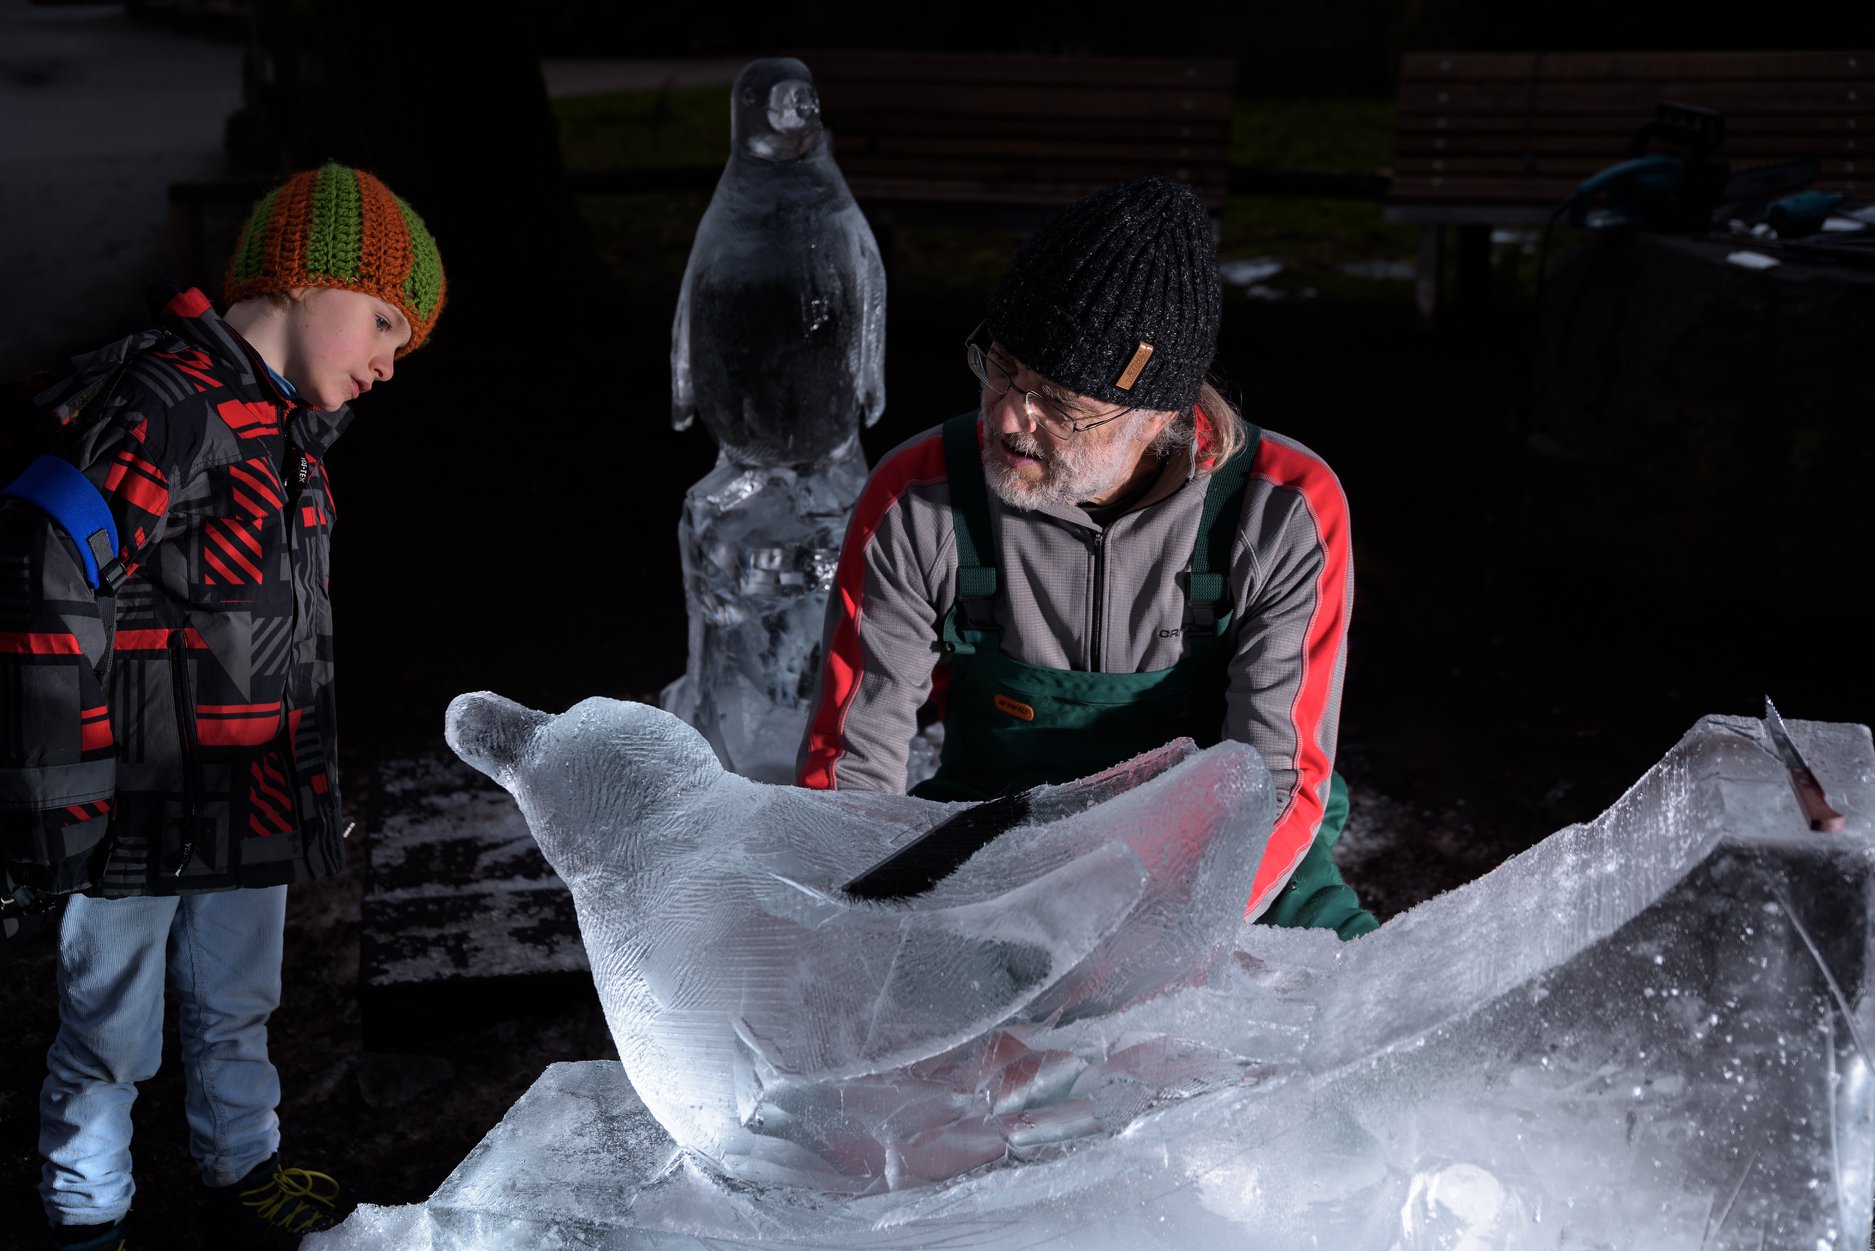 V sobotu 20. ledna byly u přímo před zraky návštěvníků vytvořeny ledové sochy dvou tučňáků v životní velikosti, a to přímo u jejich expozice. Foto: Petr Hamerník, Zoo Praha